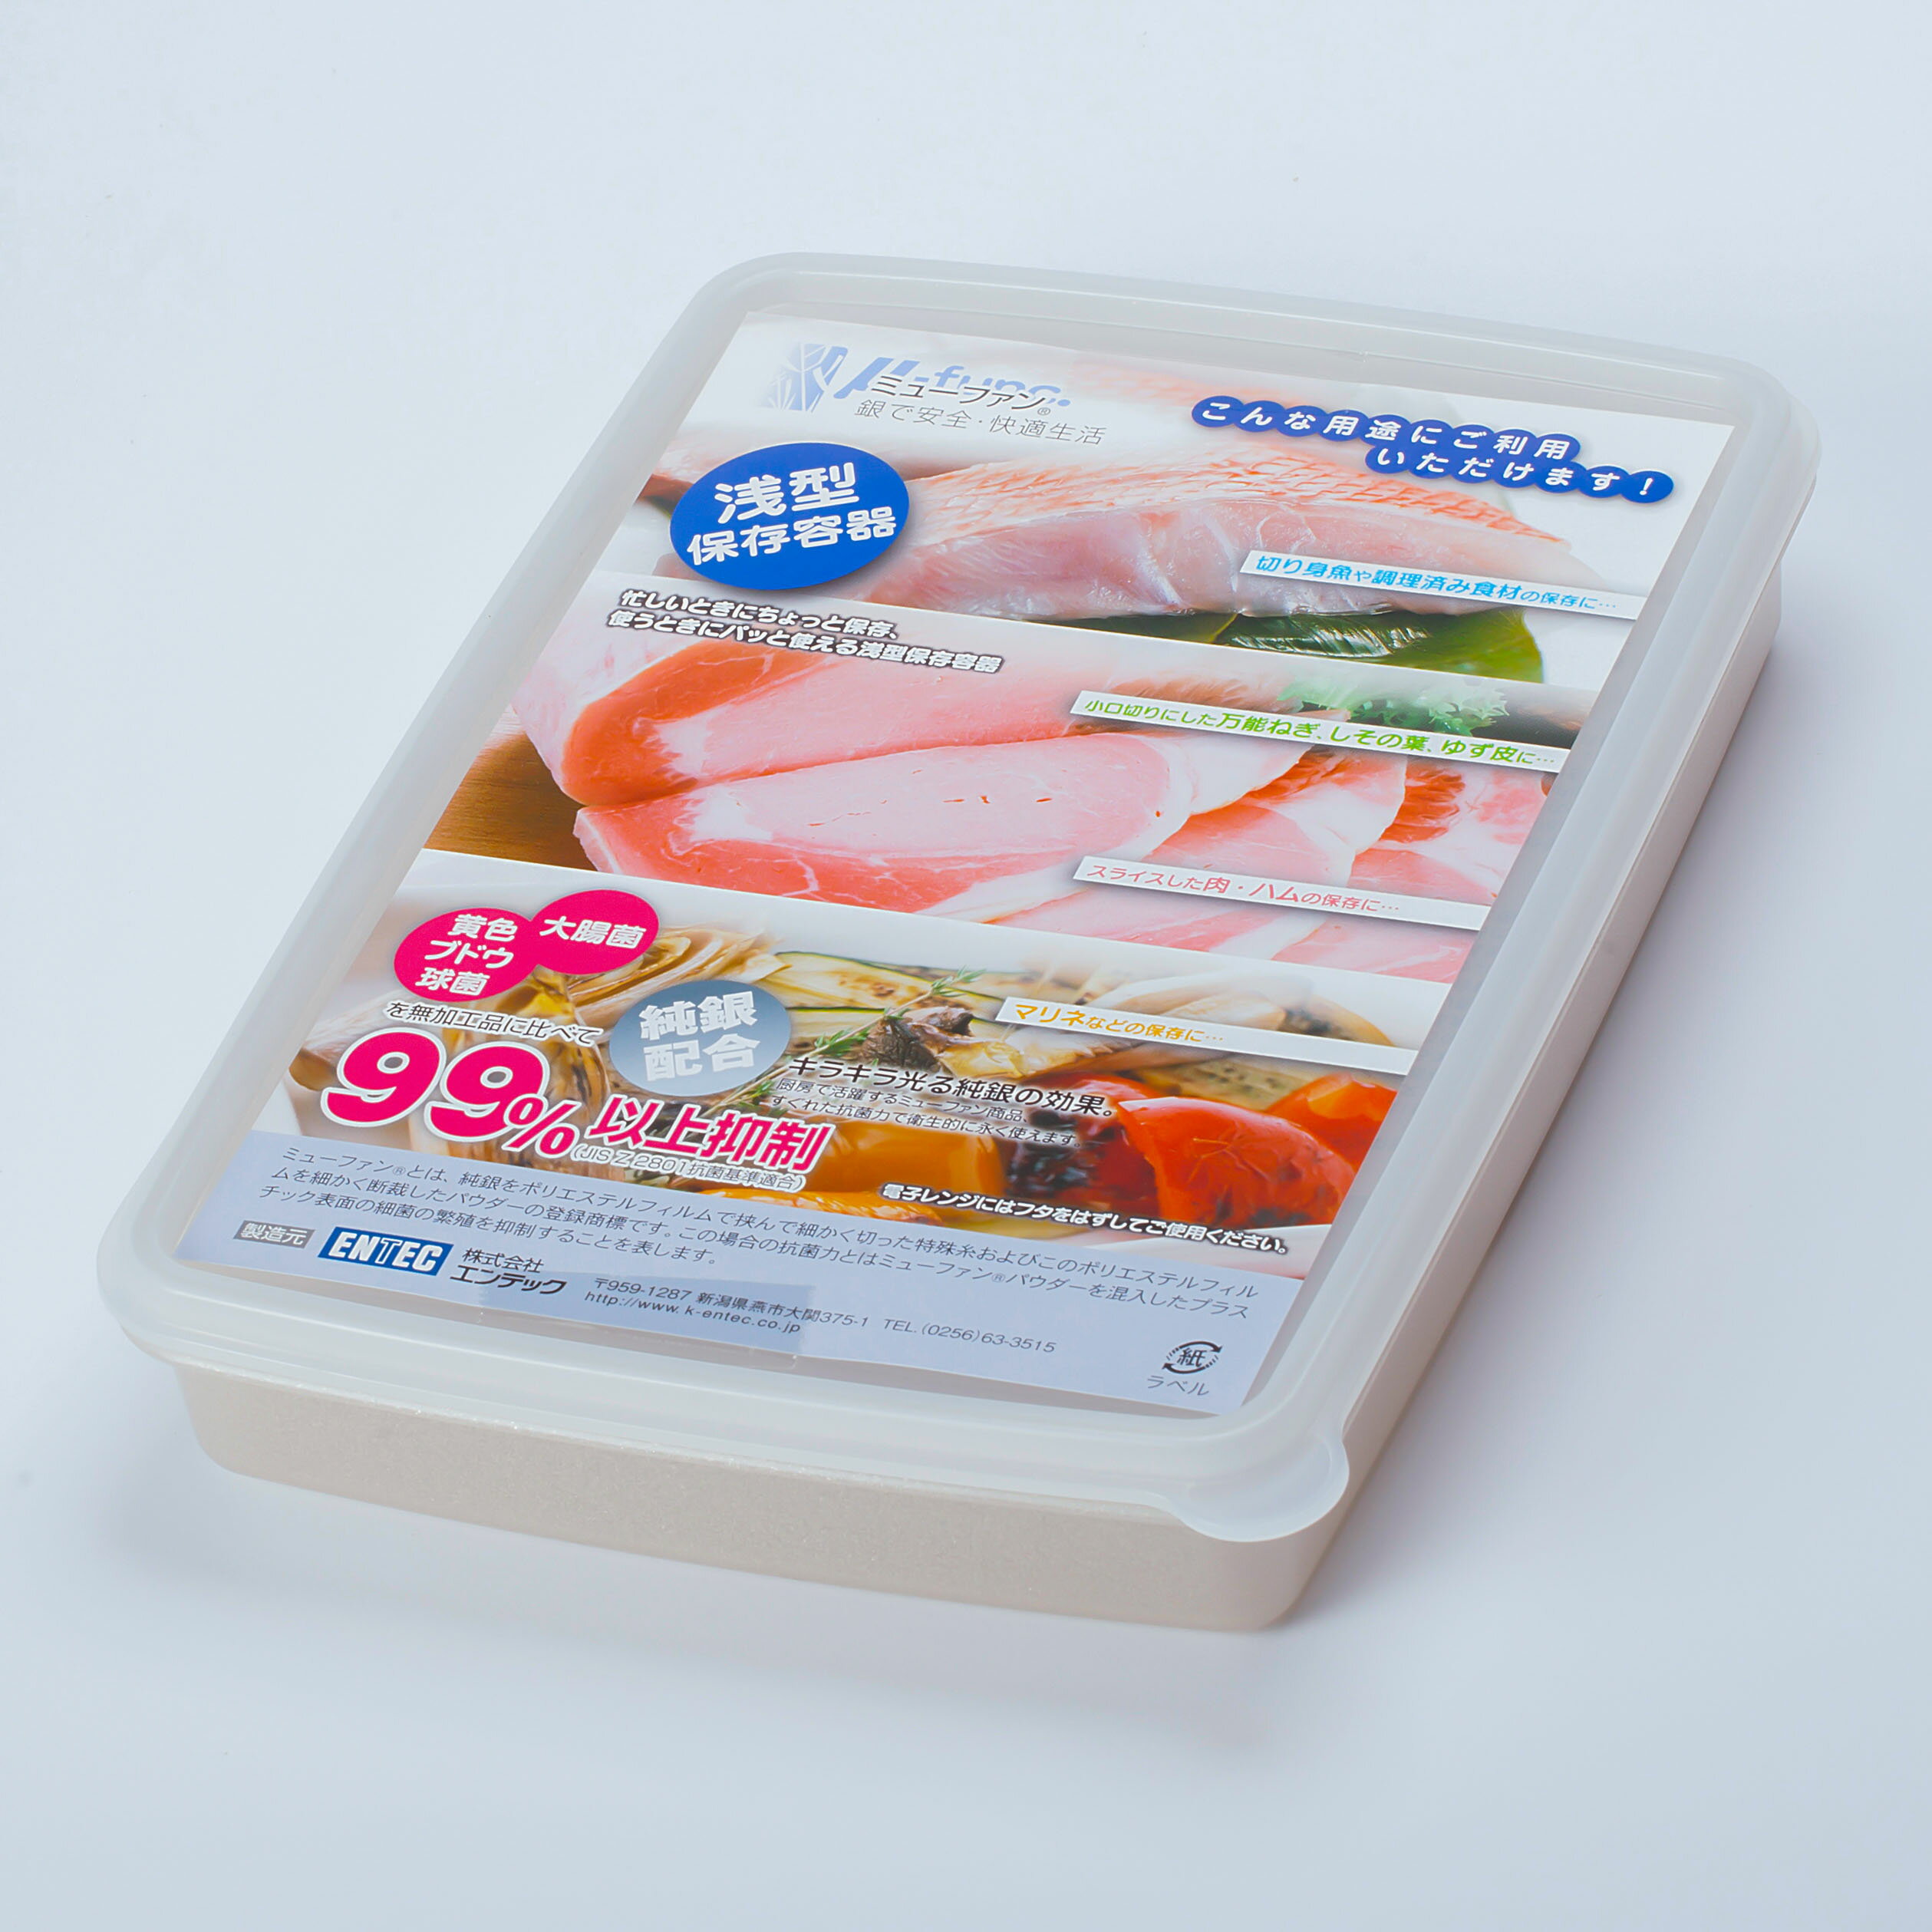 日本製mju-func®妙屋房銀纖維銀離子薄型抗菌保鮮盒T3-M131